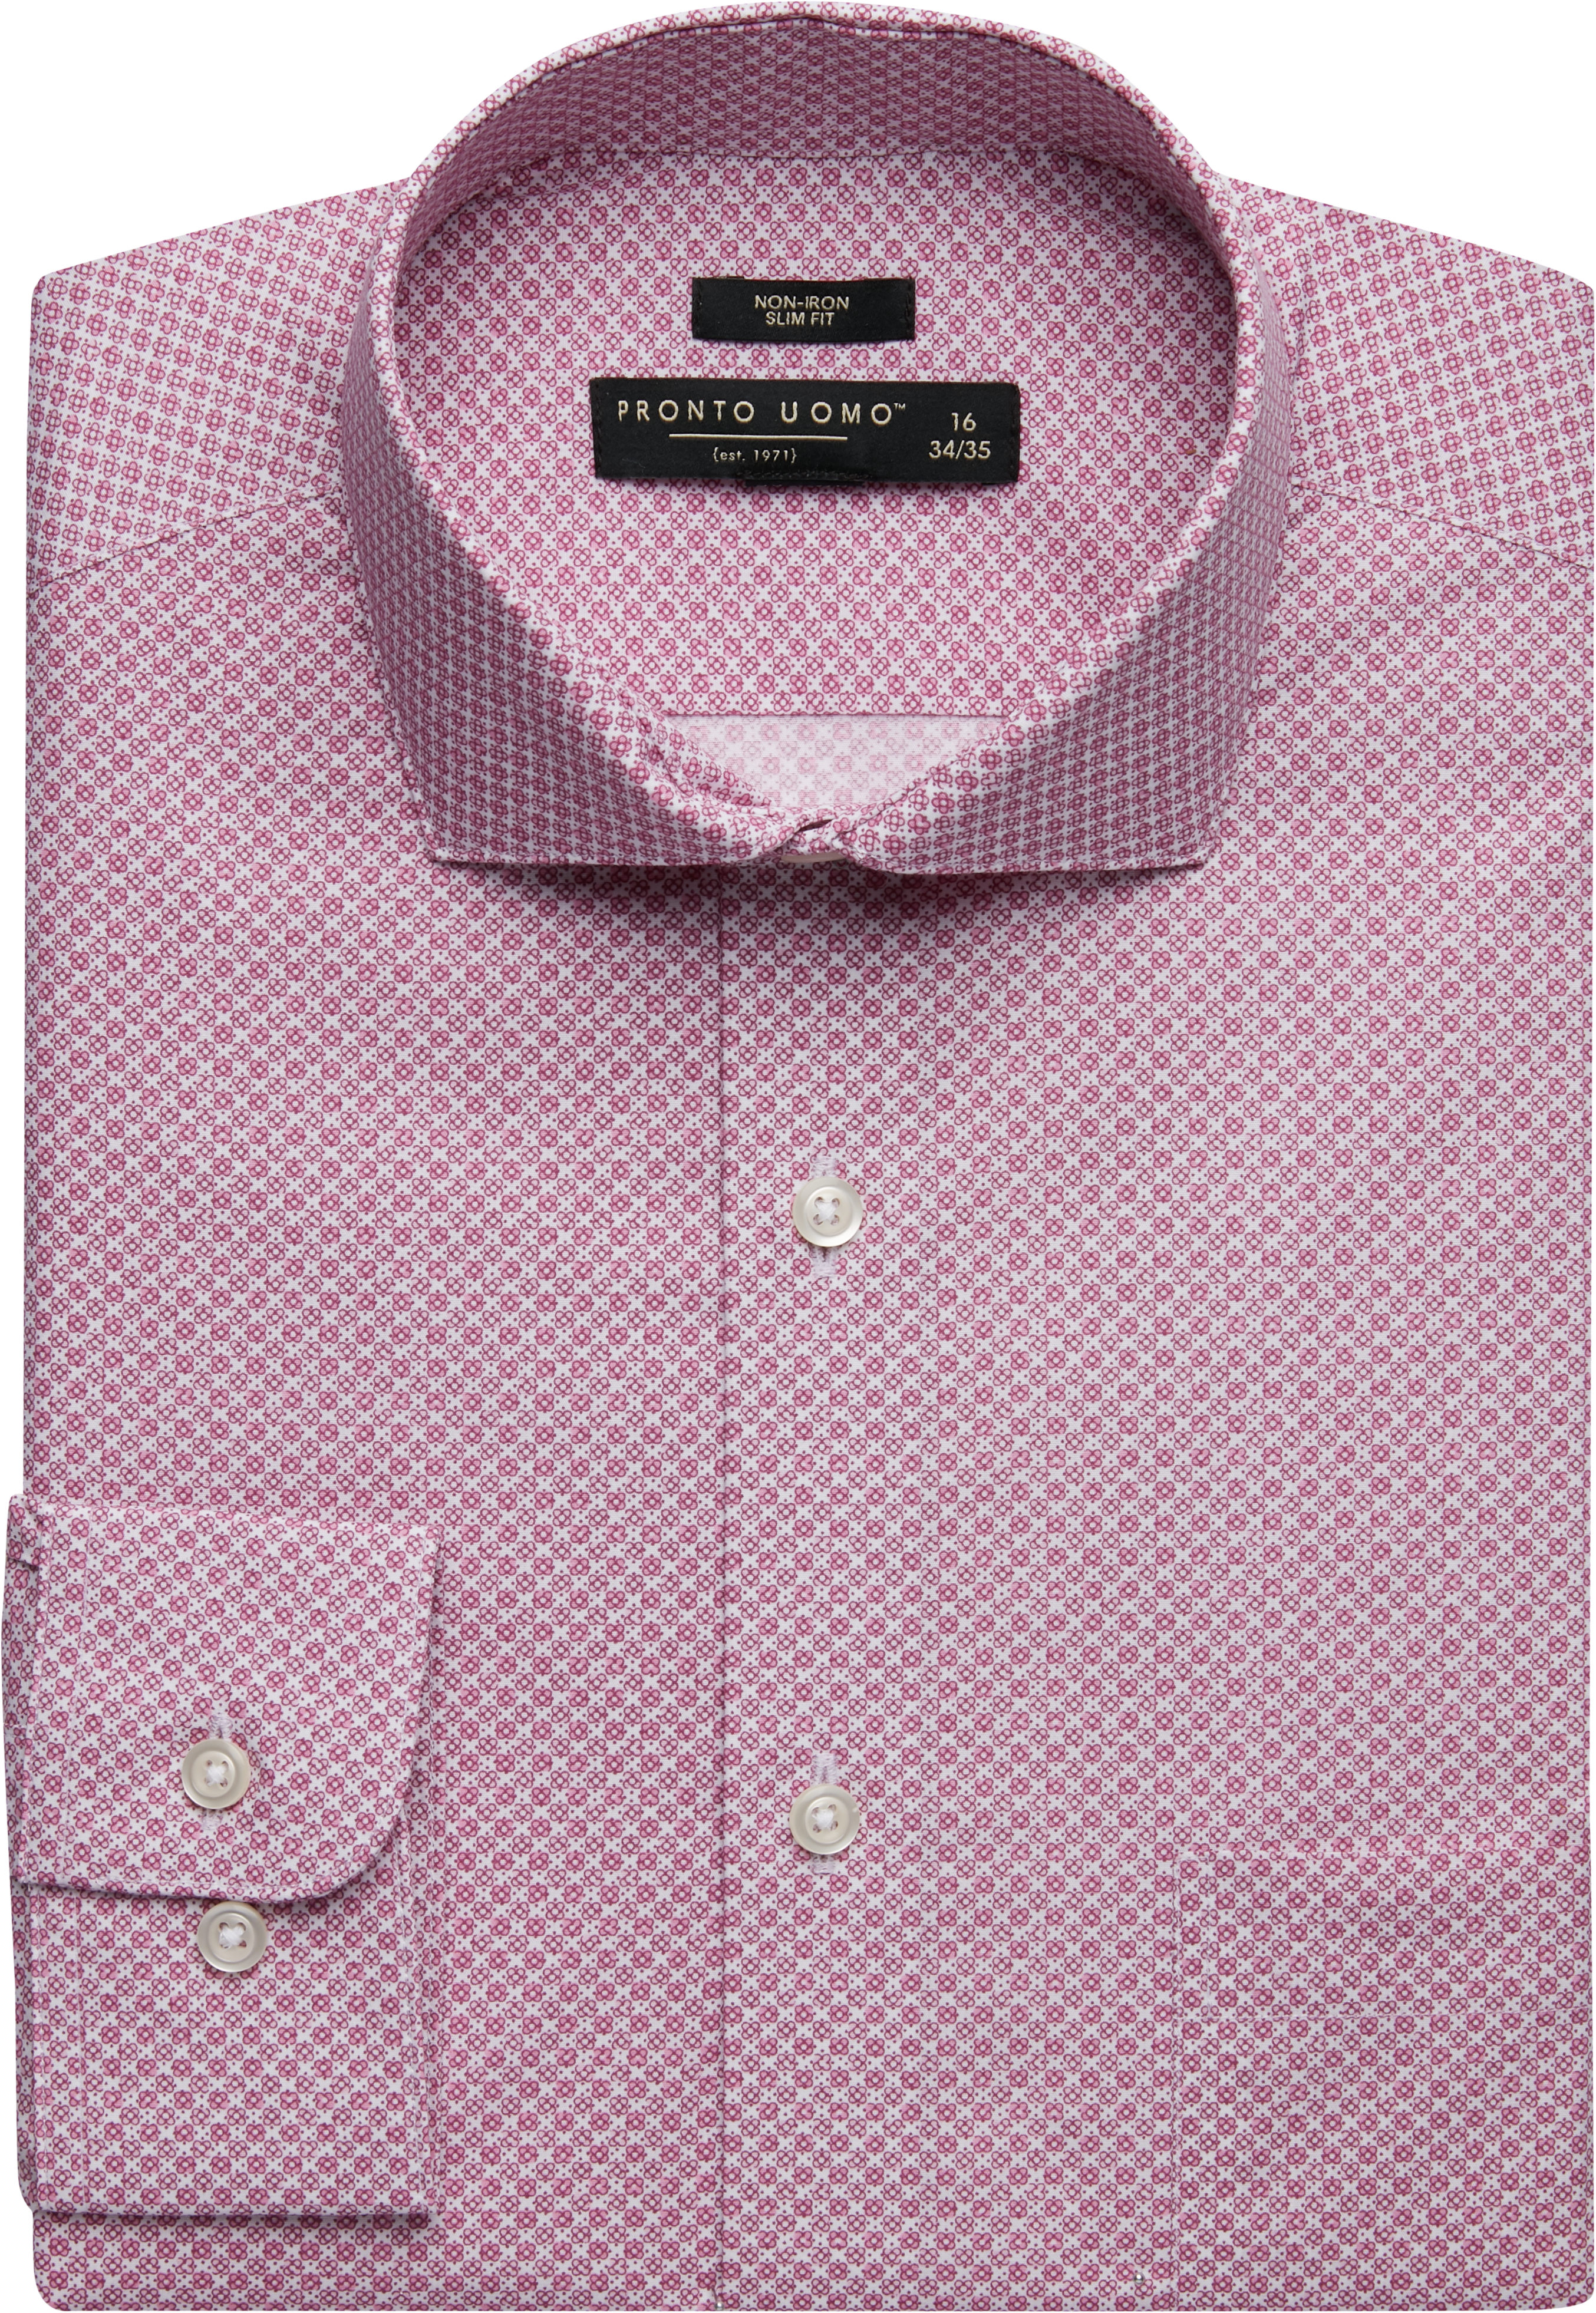 Pronto Uomo Pink Circle Flower Slim Fit Dress Shirt - Men's Sale | Men ...